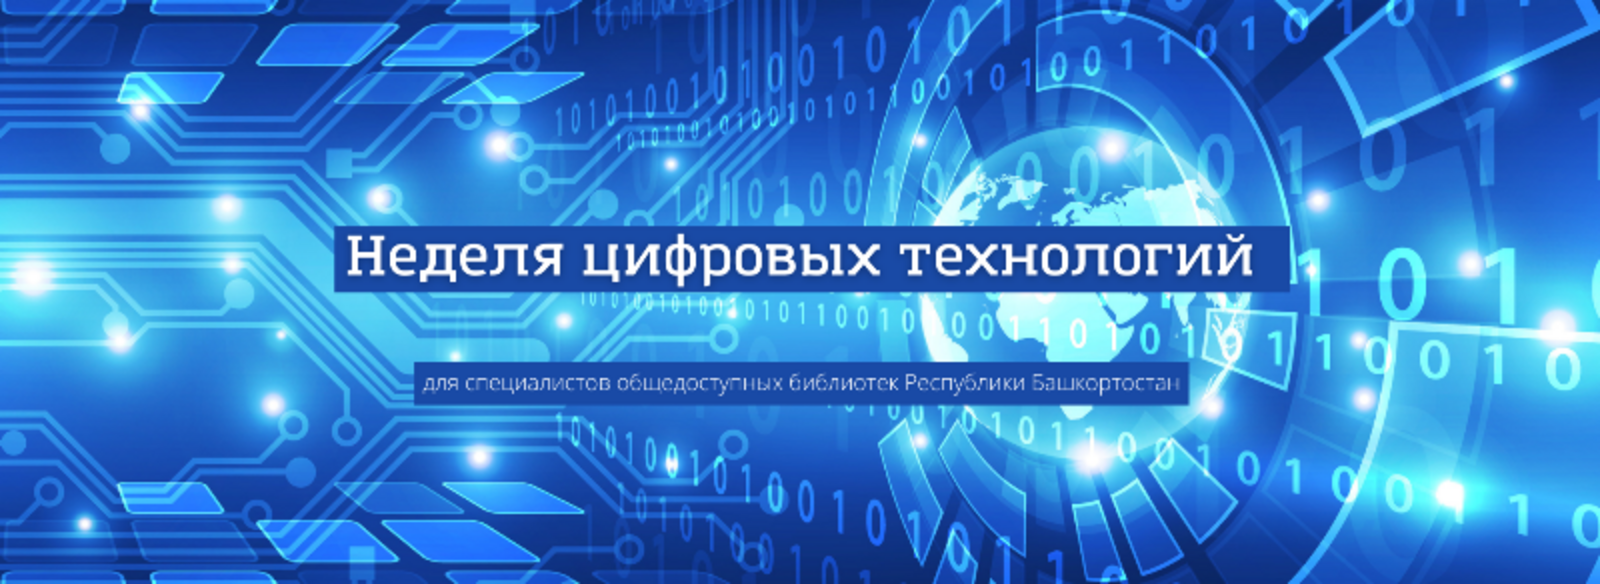 Неделя цифровых технологий для специалистов библиотек проходит в Башкортостане